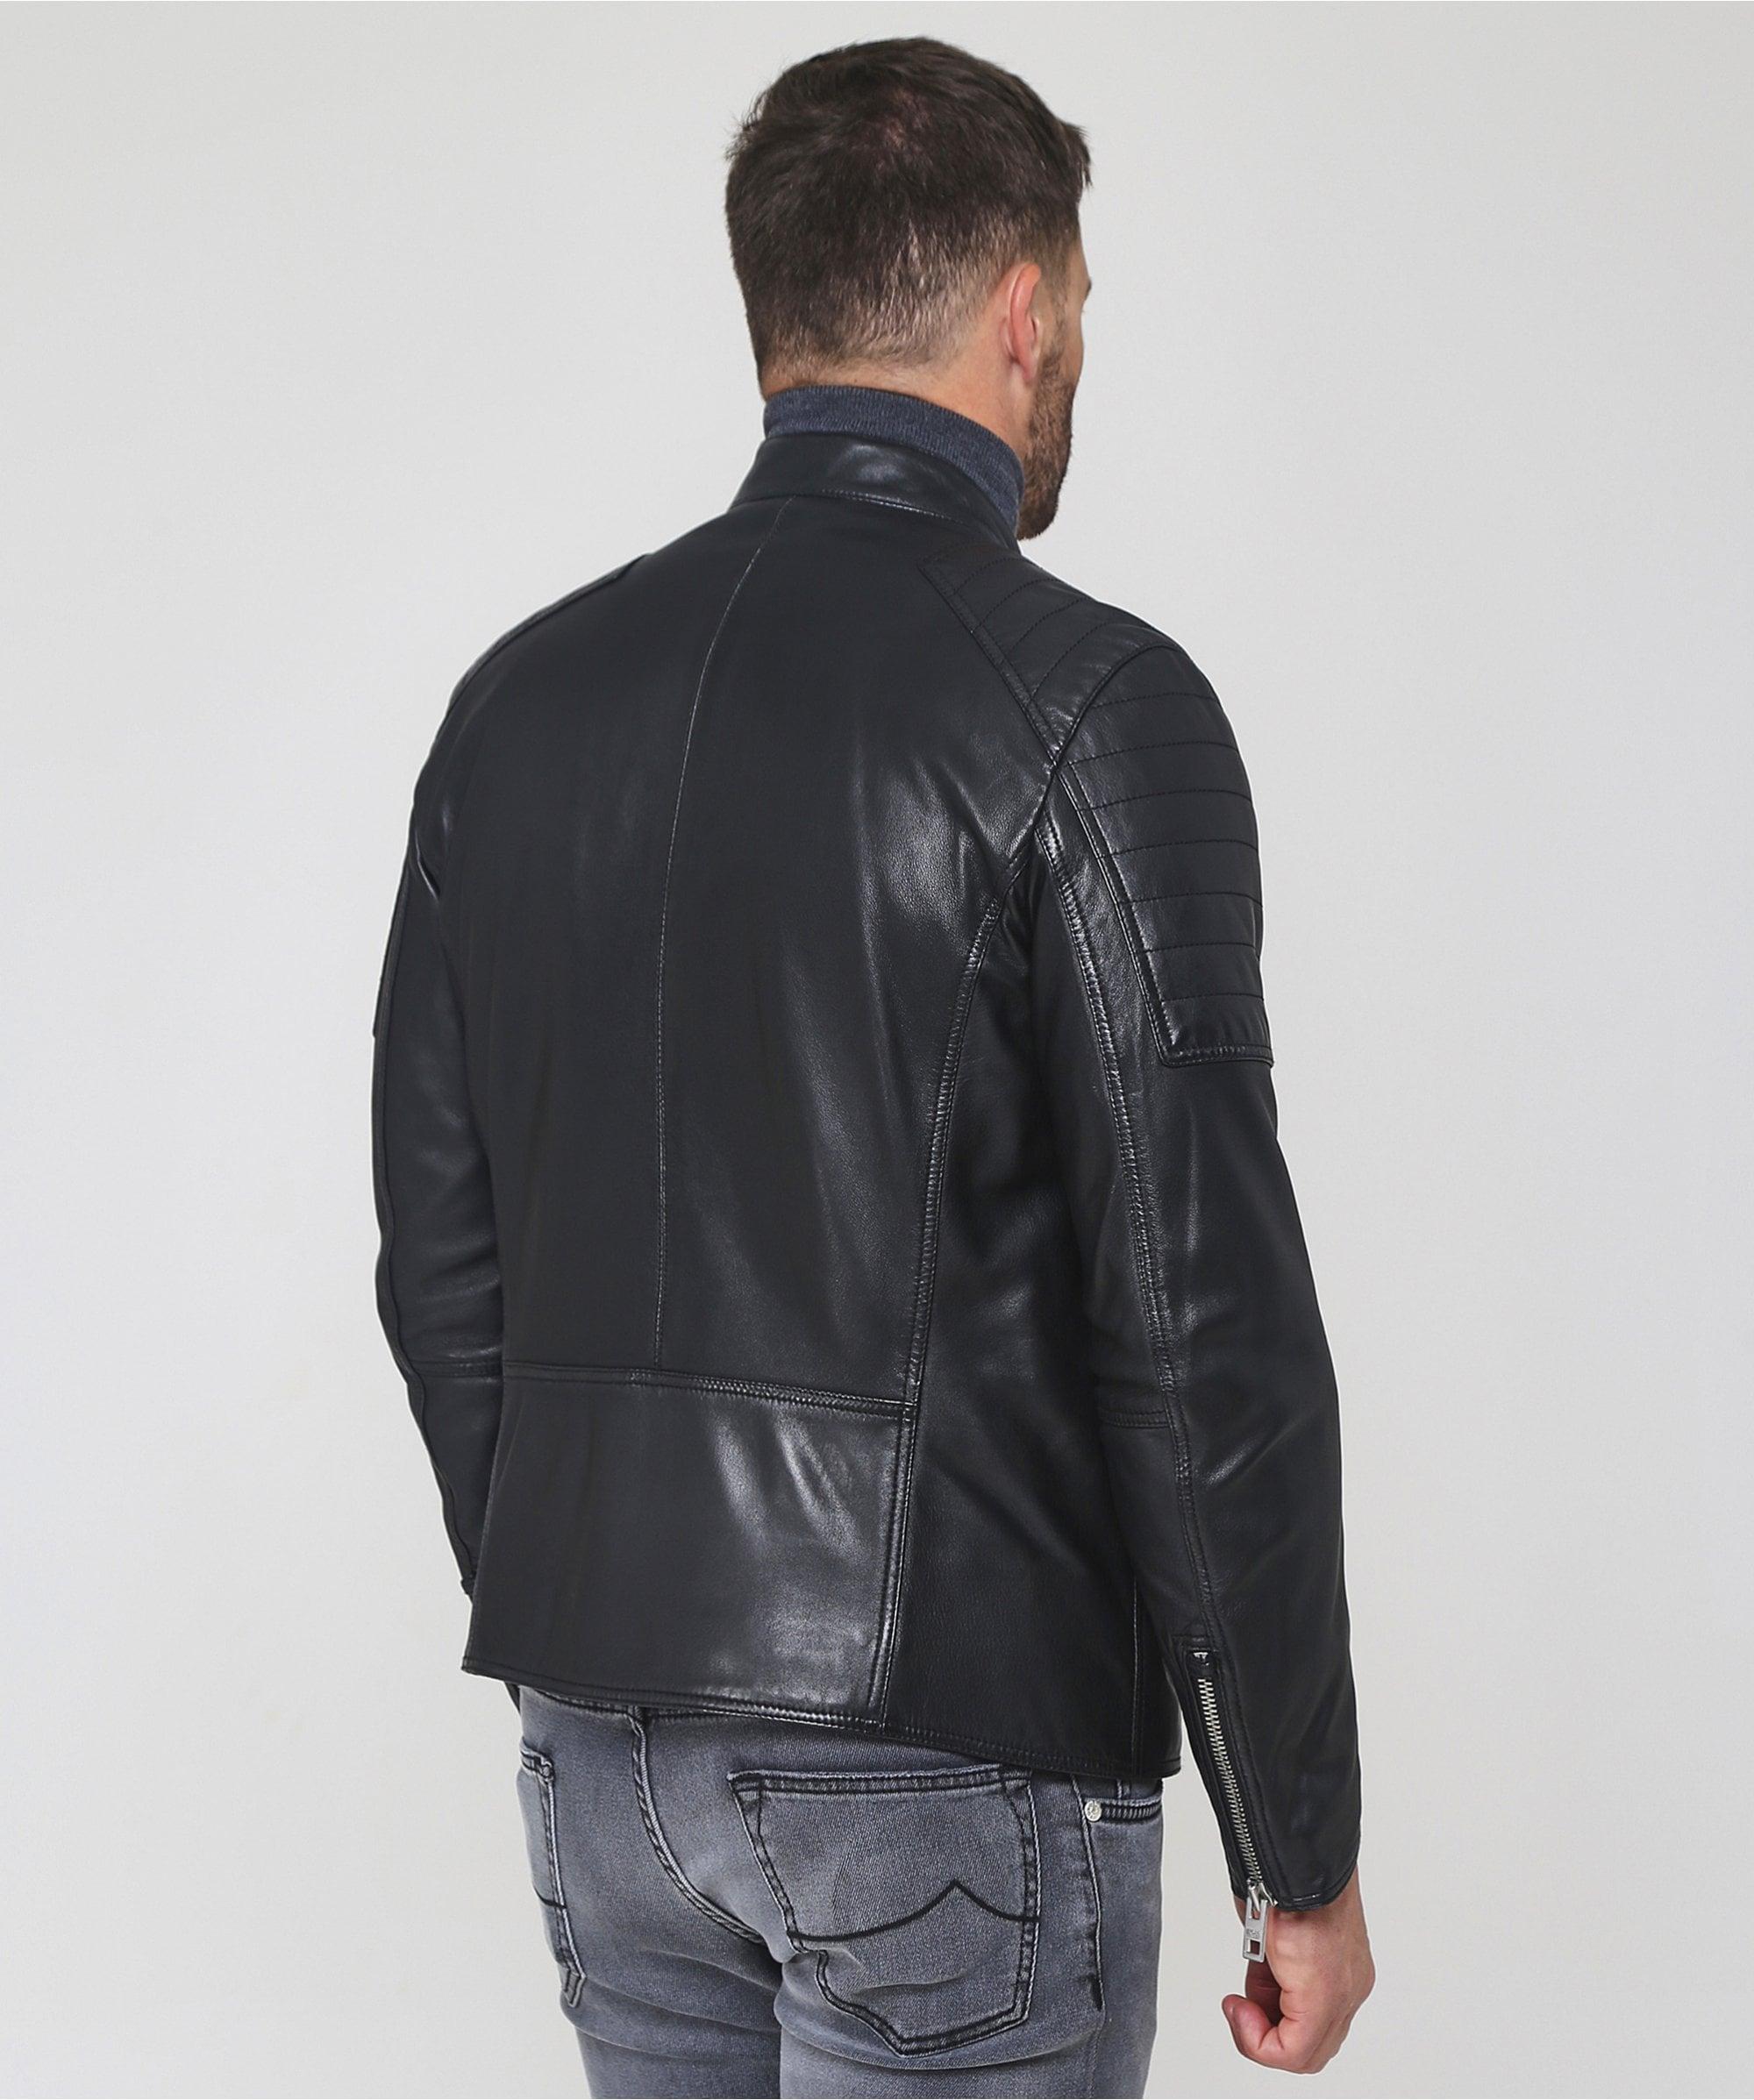 BOSS by Hugo Boss Waxed Leather Jaysee Biker Jacket in Black for Men - Lyst